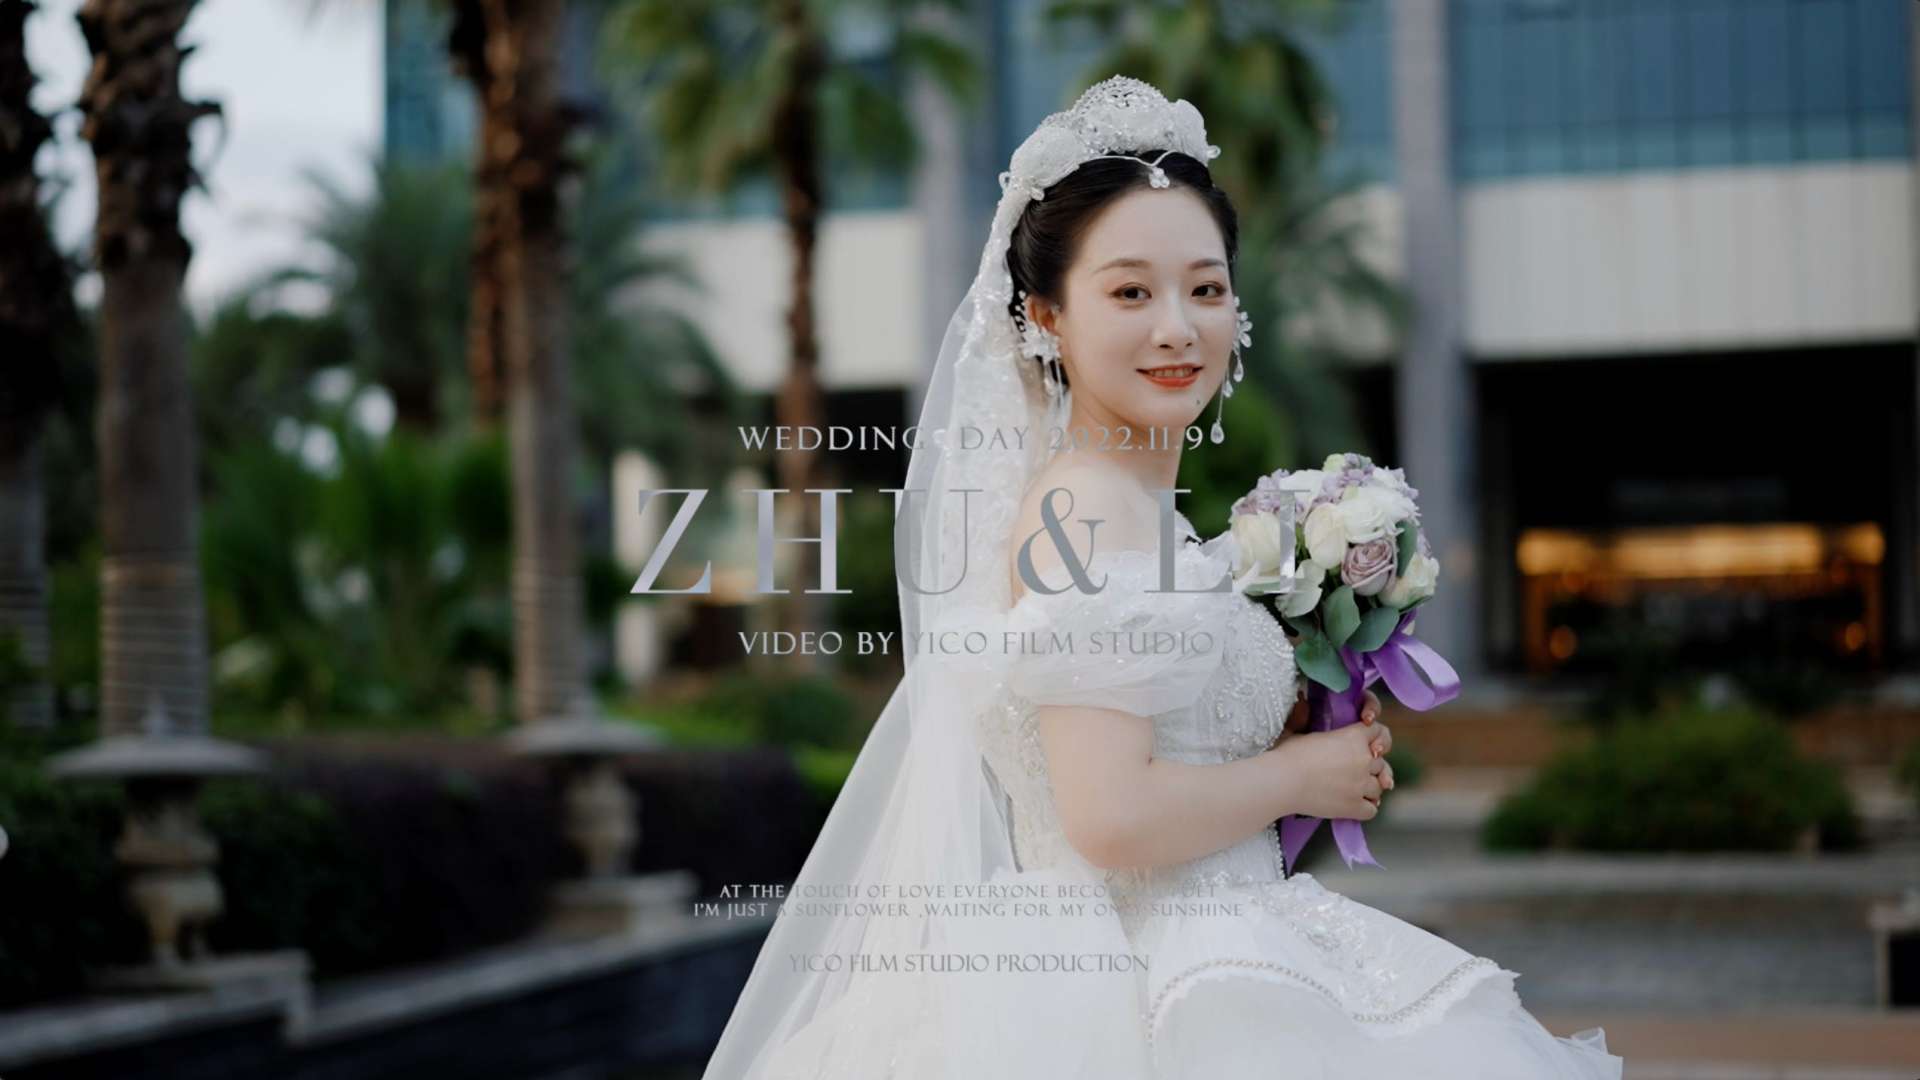 艺禾出品 2022.11.9「 Zhu & Li」婚礼快剪